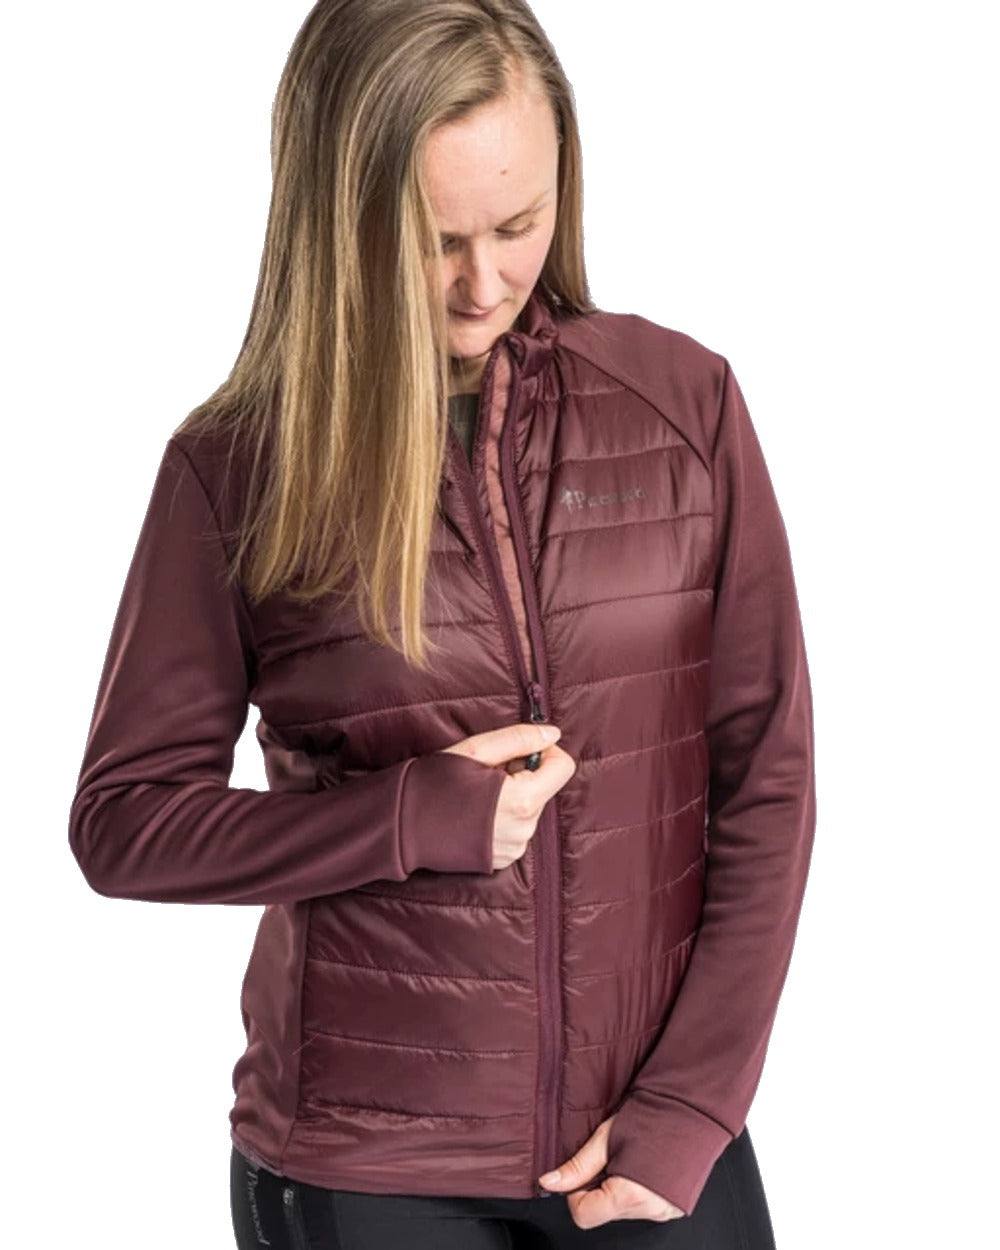 Pinewood Womens Finnveden Hybrid Power Fleece Jacket in Earth Plum 